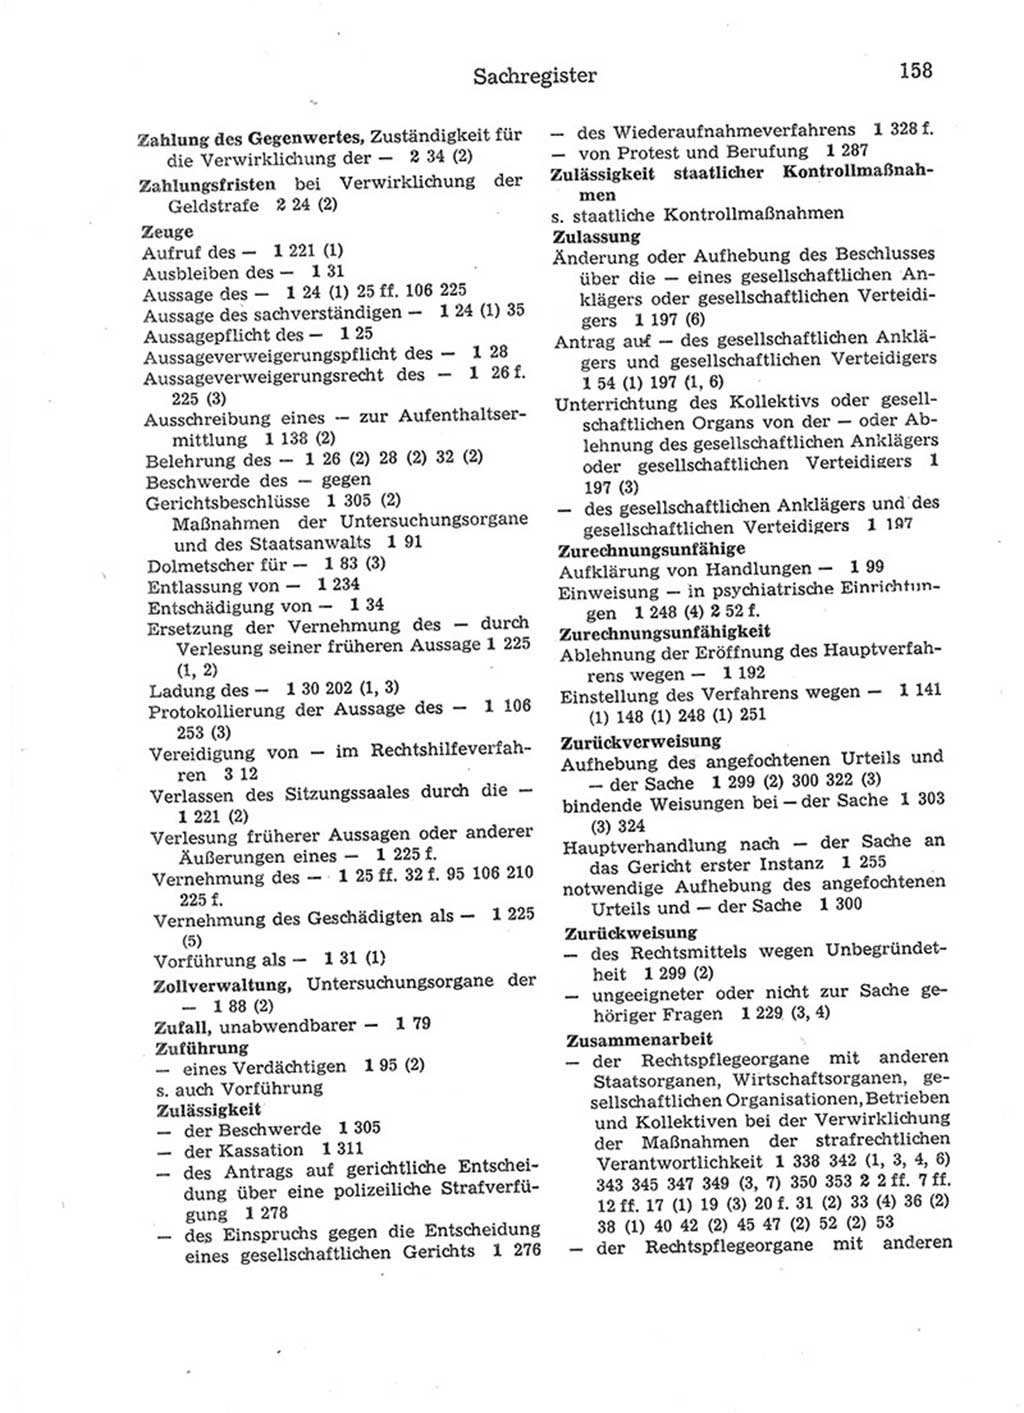 Strafprozeßordnung (StPO) der Deutschen Demokratischen Republik (DDR) 1975, Seite 158 (StPO DDR 1974, S. 158)